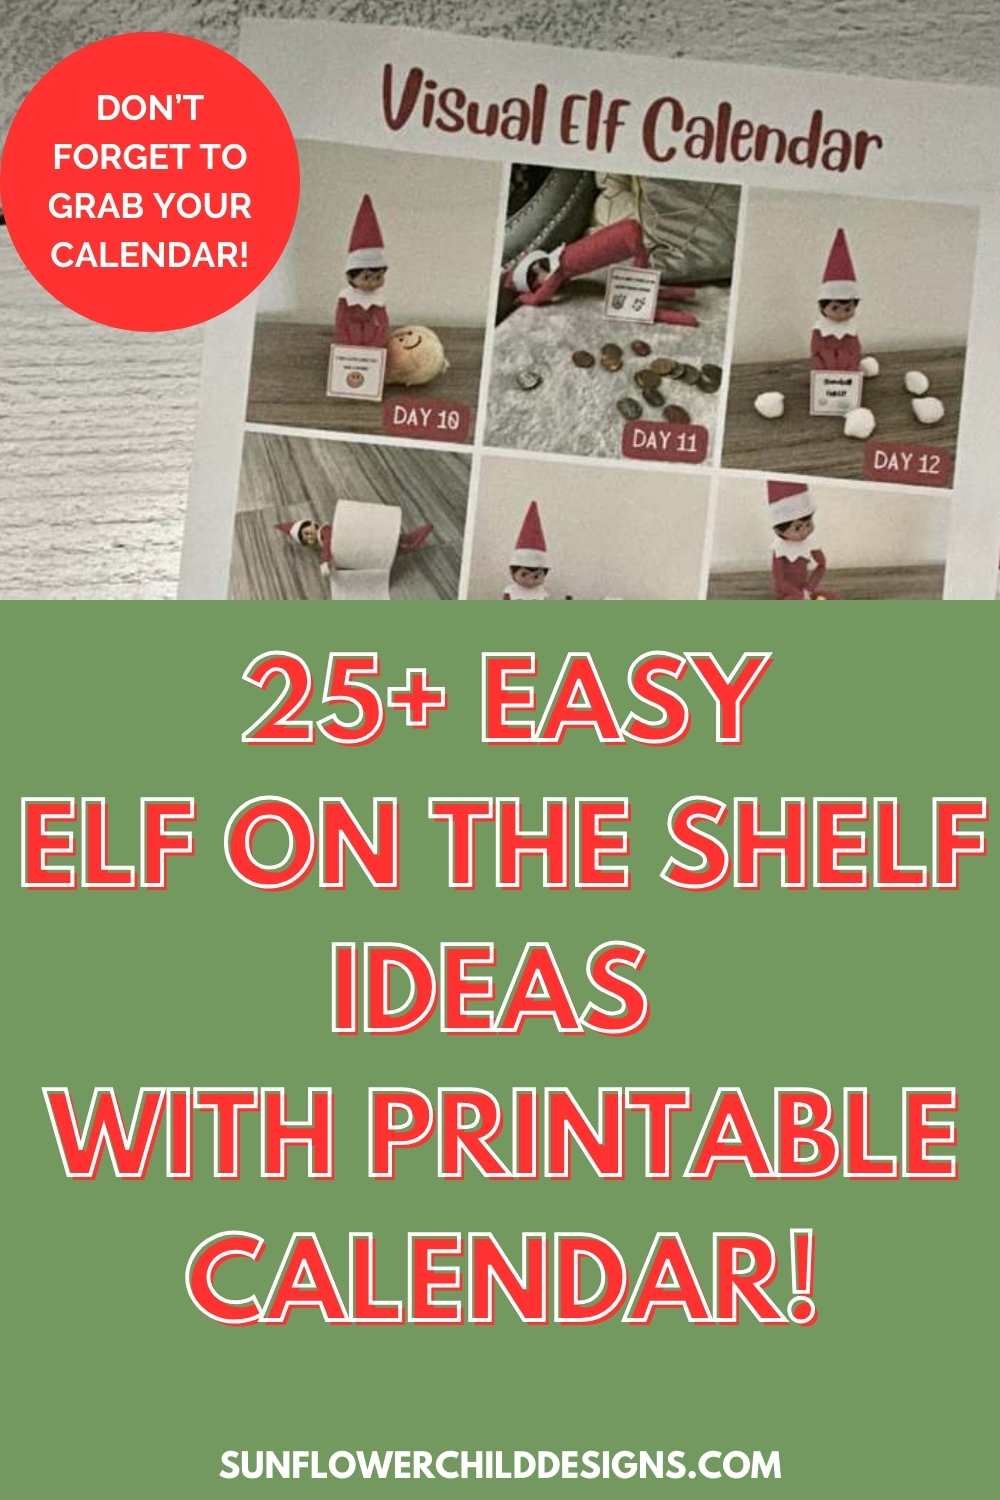 25+ Creative Elf on the Shelf Ideas &amp; Printable Calendar!